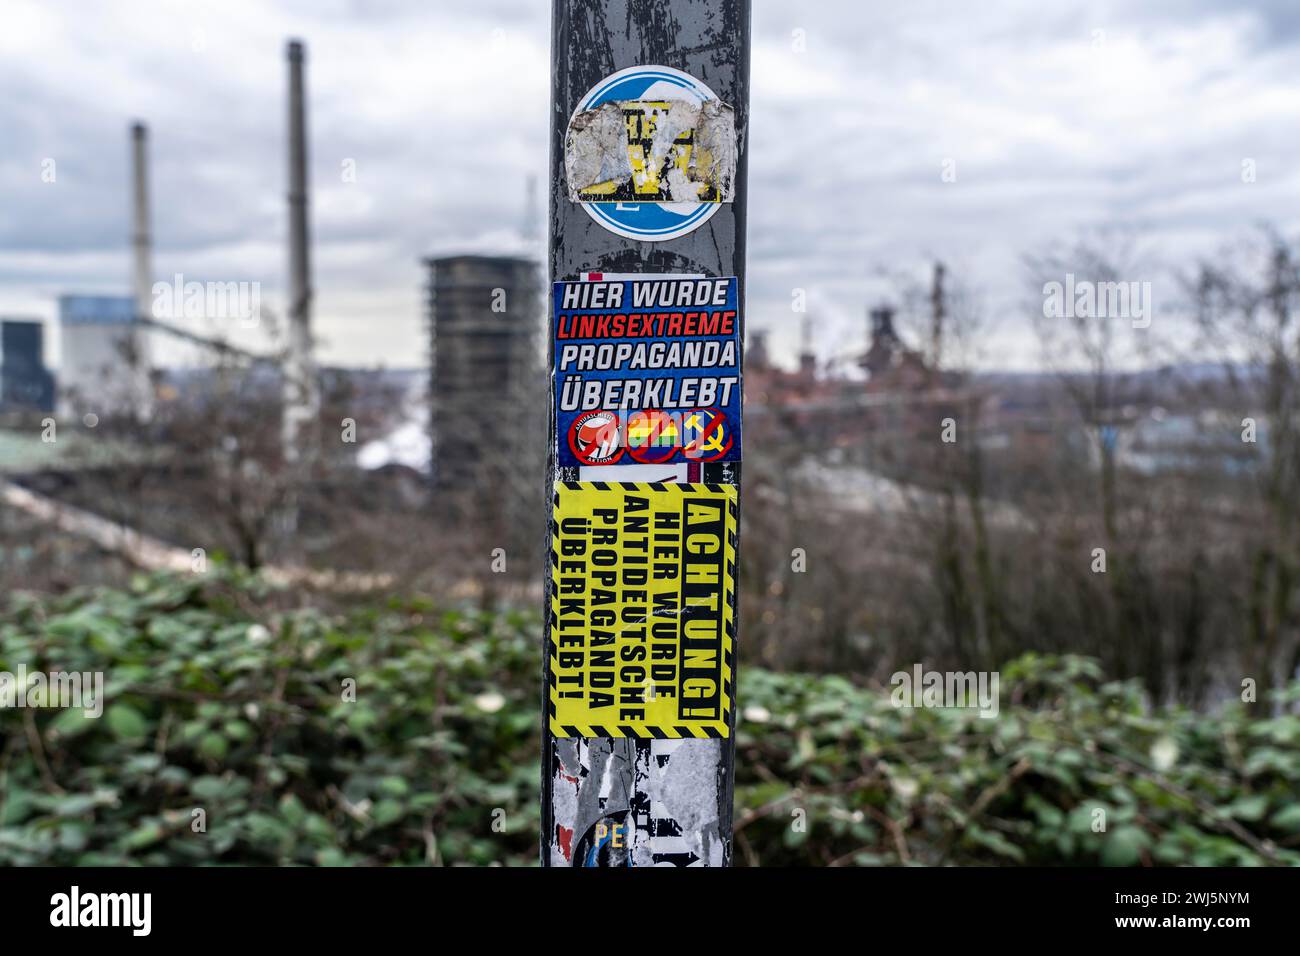 Adesivi di gruppi estremisti di destra incollati su adesivi di gruppi apparentemente di sinistra, Duisburg, NRW, Germania, Foto Stock